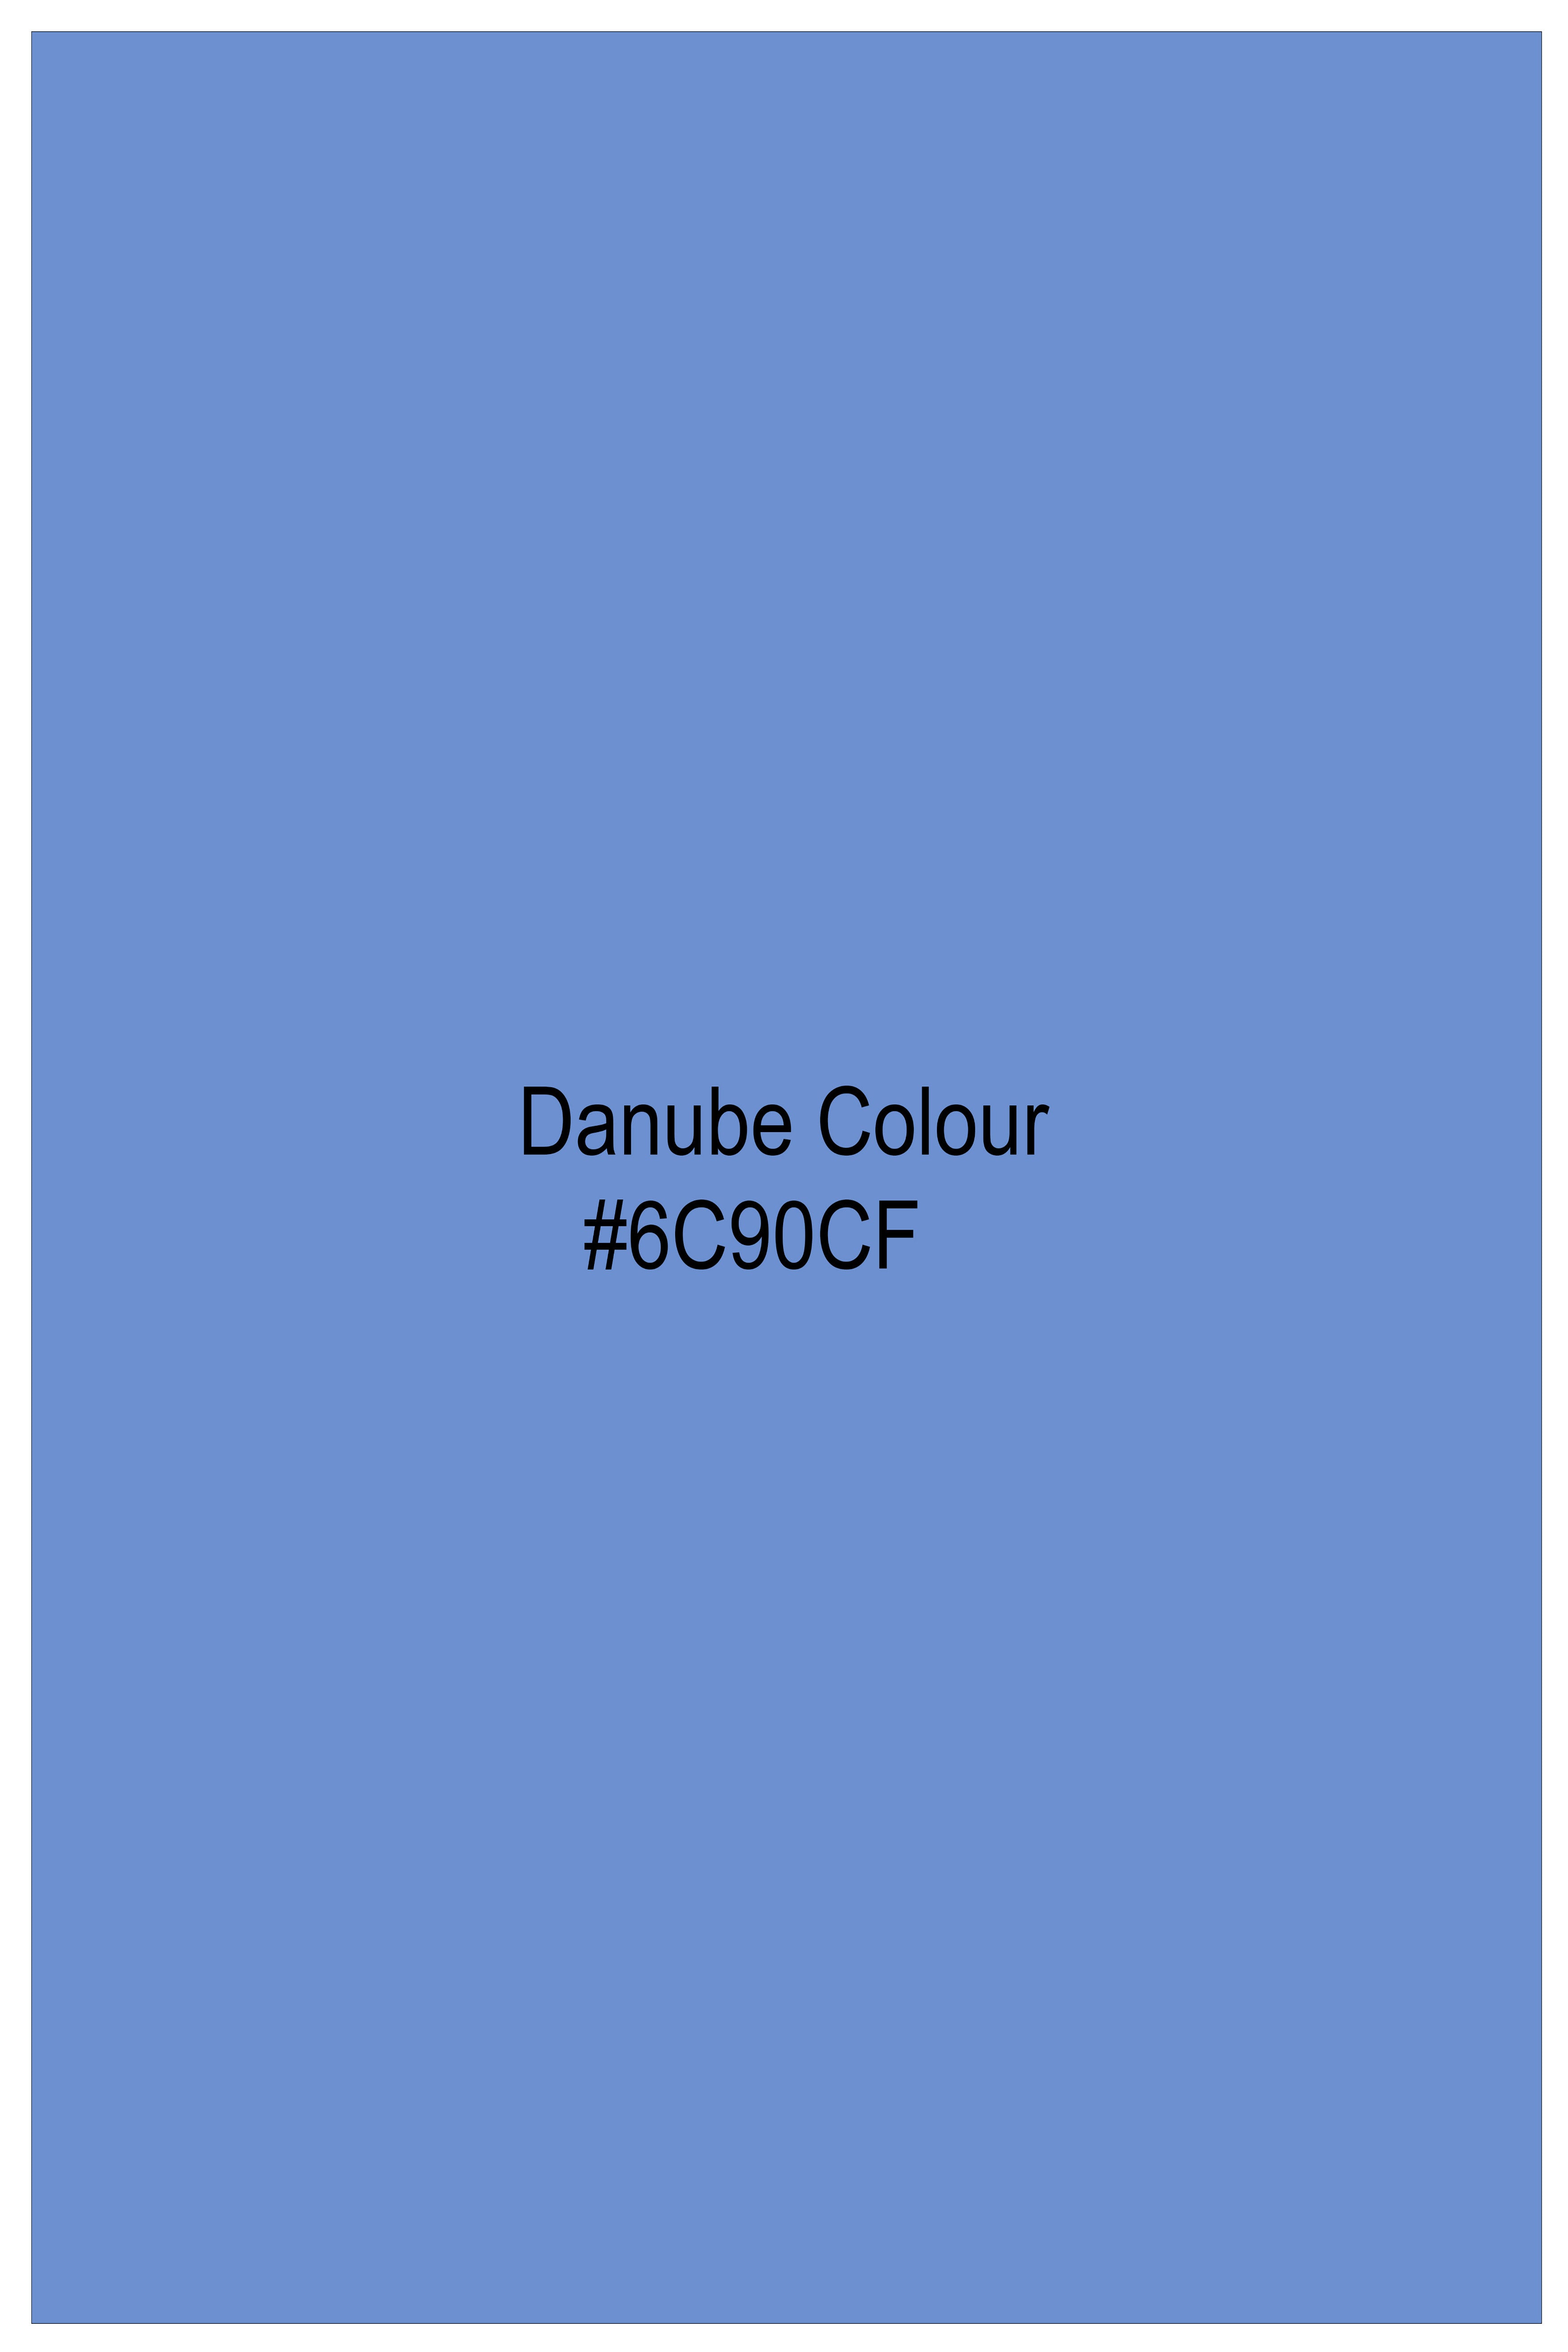 Danube Sky Blue Luxurious Linen Shirt 10092-BD-BLE-38, 10092-BD-BLE-H-38, 10092-BD-BLE-39, 10092-BD-BLE-H-39, 10092-BD-BLE-40, 10092-BD-BLE-H-40, 10092-BD-BLE-42, 10092-BD-BLE-H-42, 10092-BD-BLE-44, 10092-BD-BLE-H-44, 10092-BD-BLE-46, 10092-BD-BLE-H-46, 10092-BD-BLE-48, 10092-BD-BLE-H-48, 10092-BD-BLE-50, 10092-BD-BLE-H-50, 10092-BD-BLE-52, 10092-BD-BLE-H-52